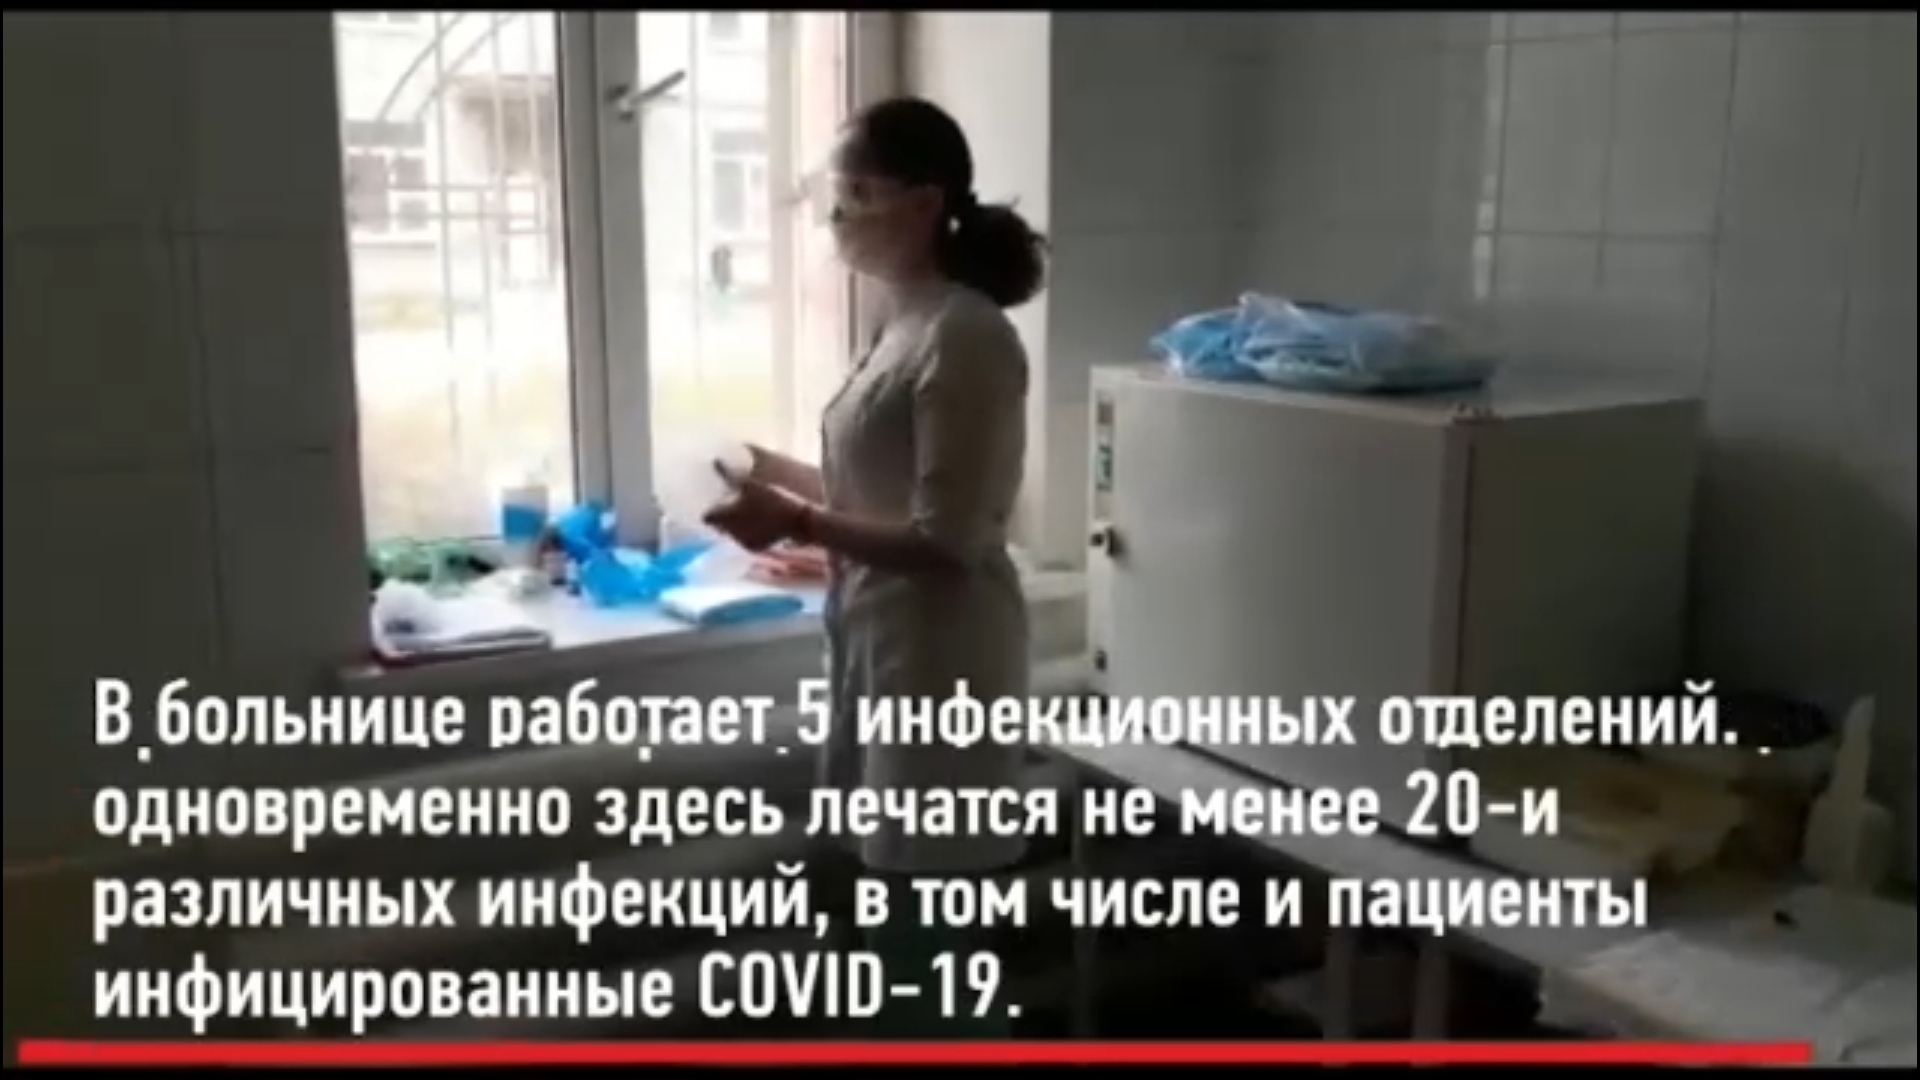 Дмитрий Миронов поделился видео о работе борющихся с коронавирусом врачей